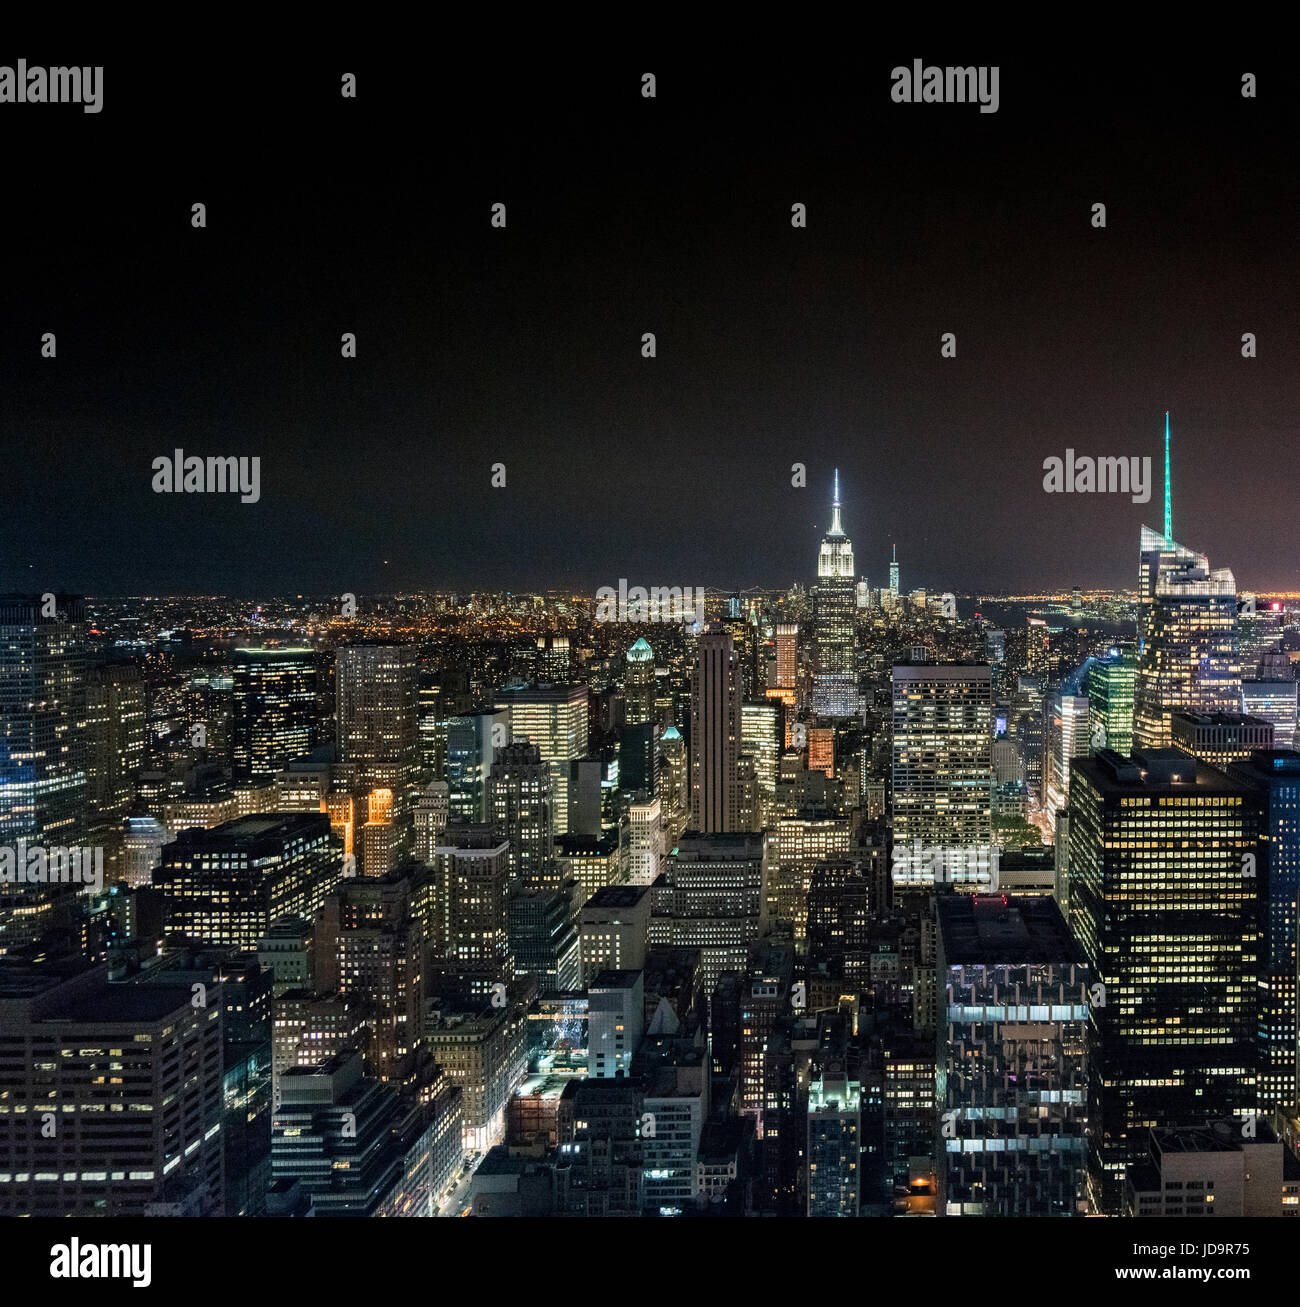 Vista aerea del paesaggio urbano e grattacieli di New York City, Stati Uniti d'America. 2016 città urbana negli Stati Uniti d'America Foto Stock